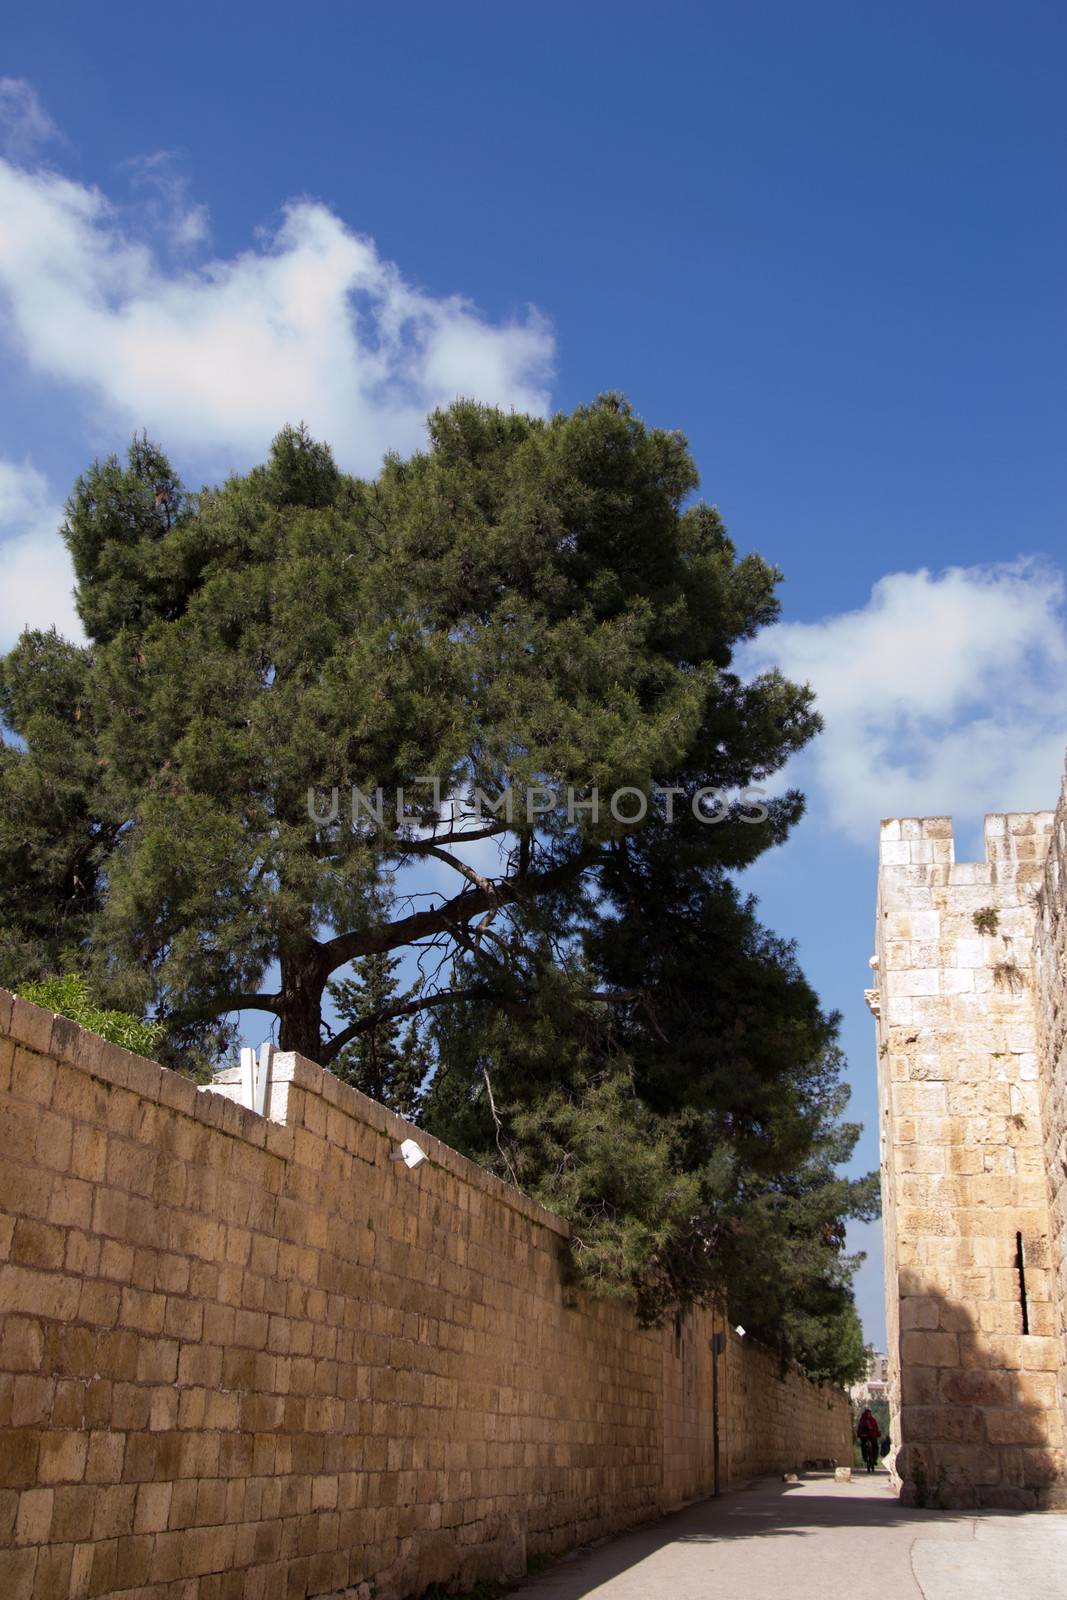 Jerusalem, inside the Old City by slavamalai